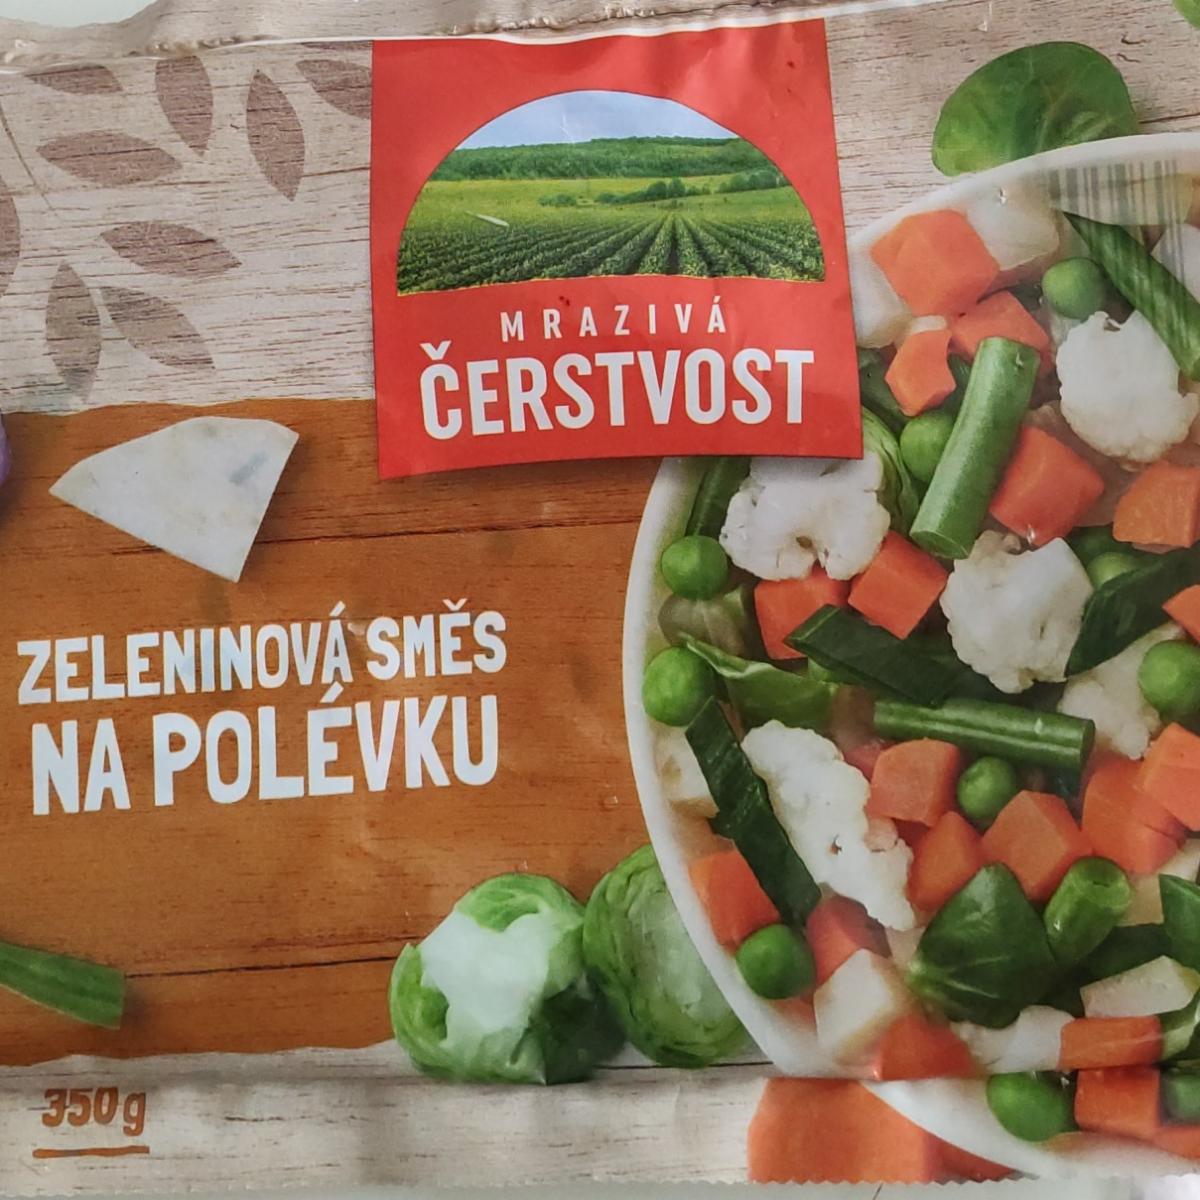 Фото - Овощи замороженные смесь Mraziva Cerstvost